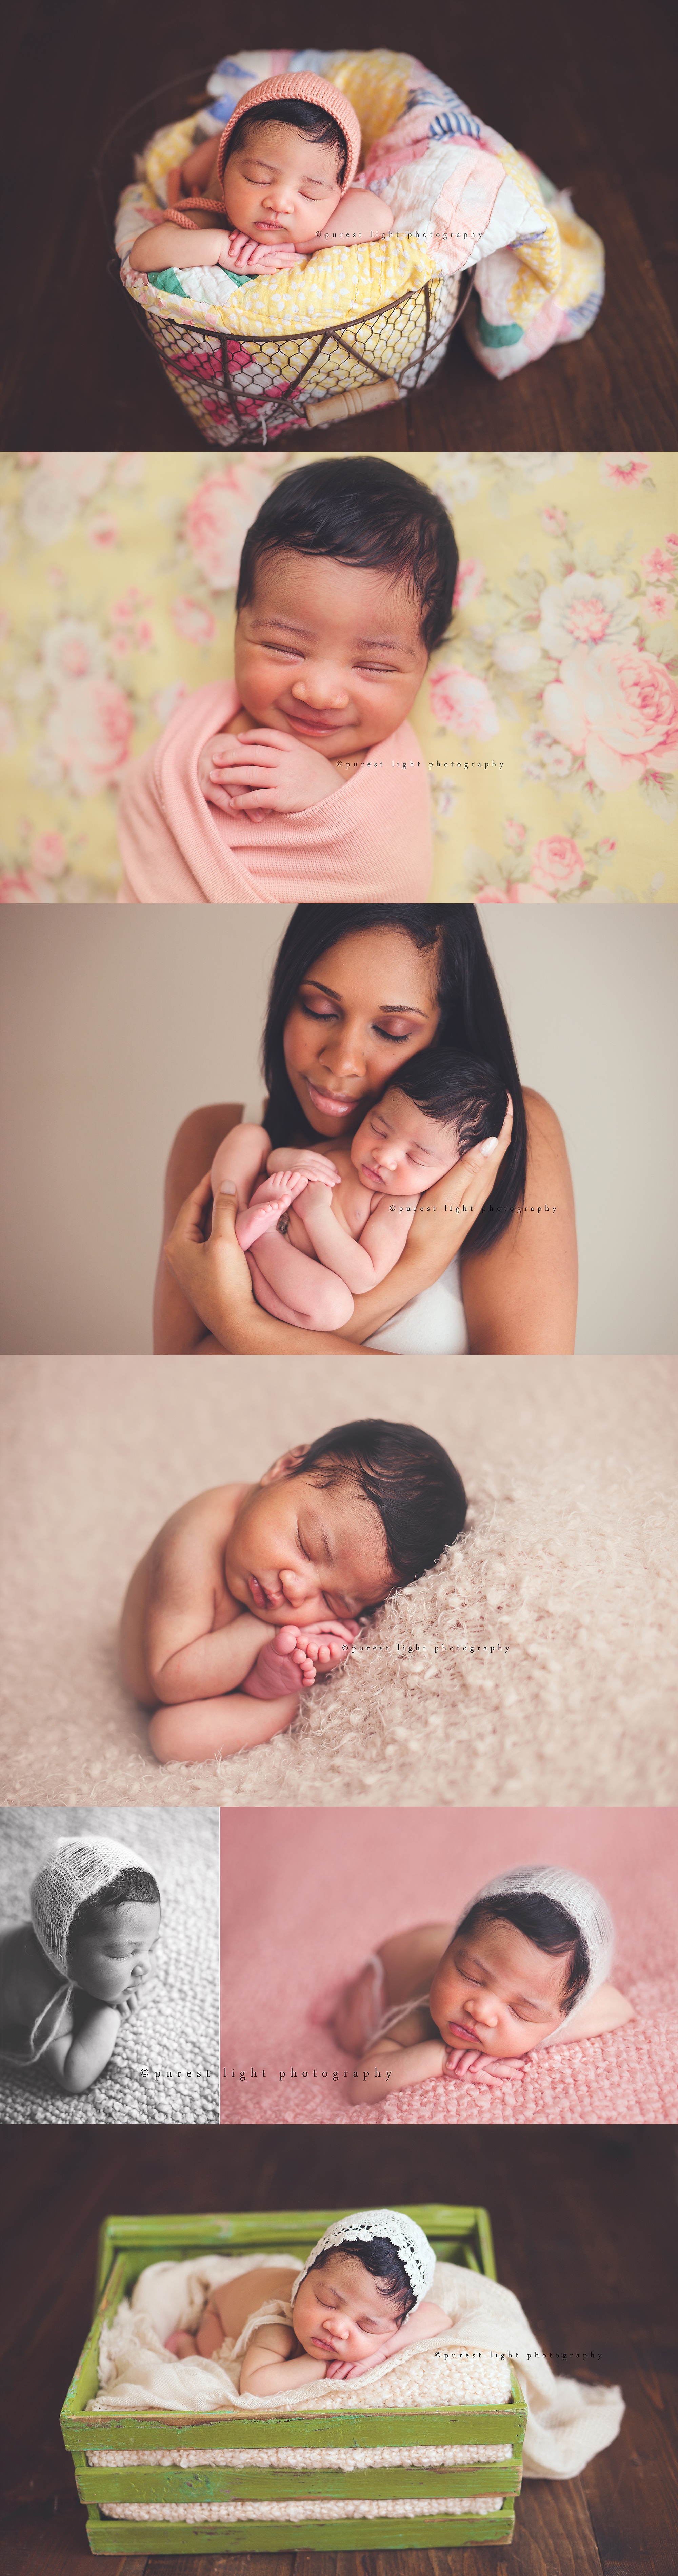 Las Vegas Newborn Photographer, Las Vegas Baby Photographer, Baby, family